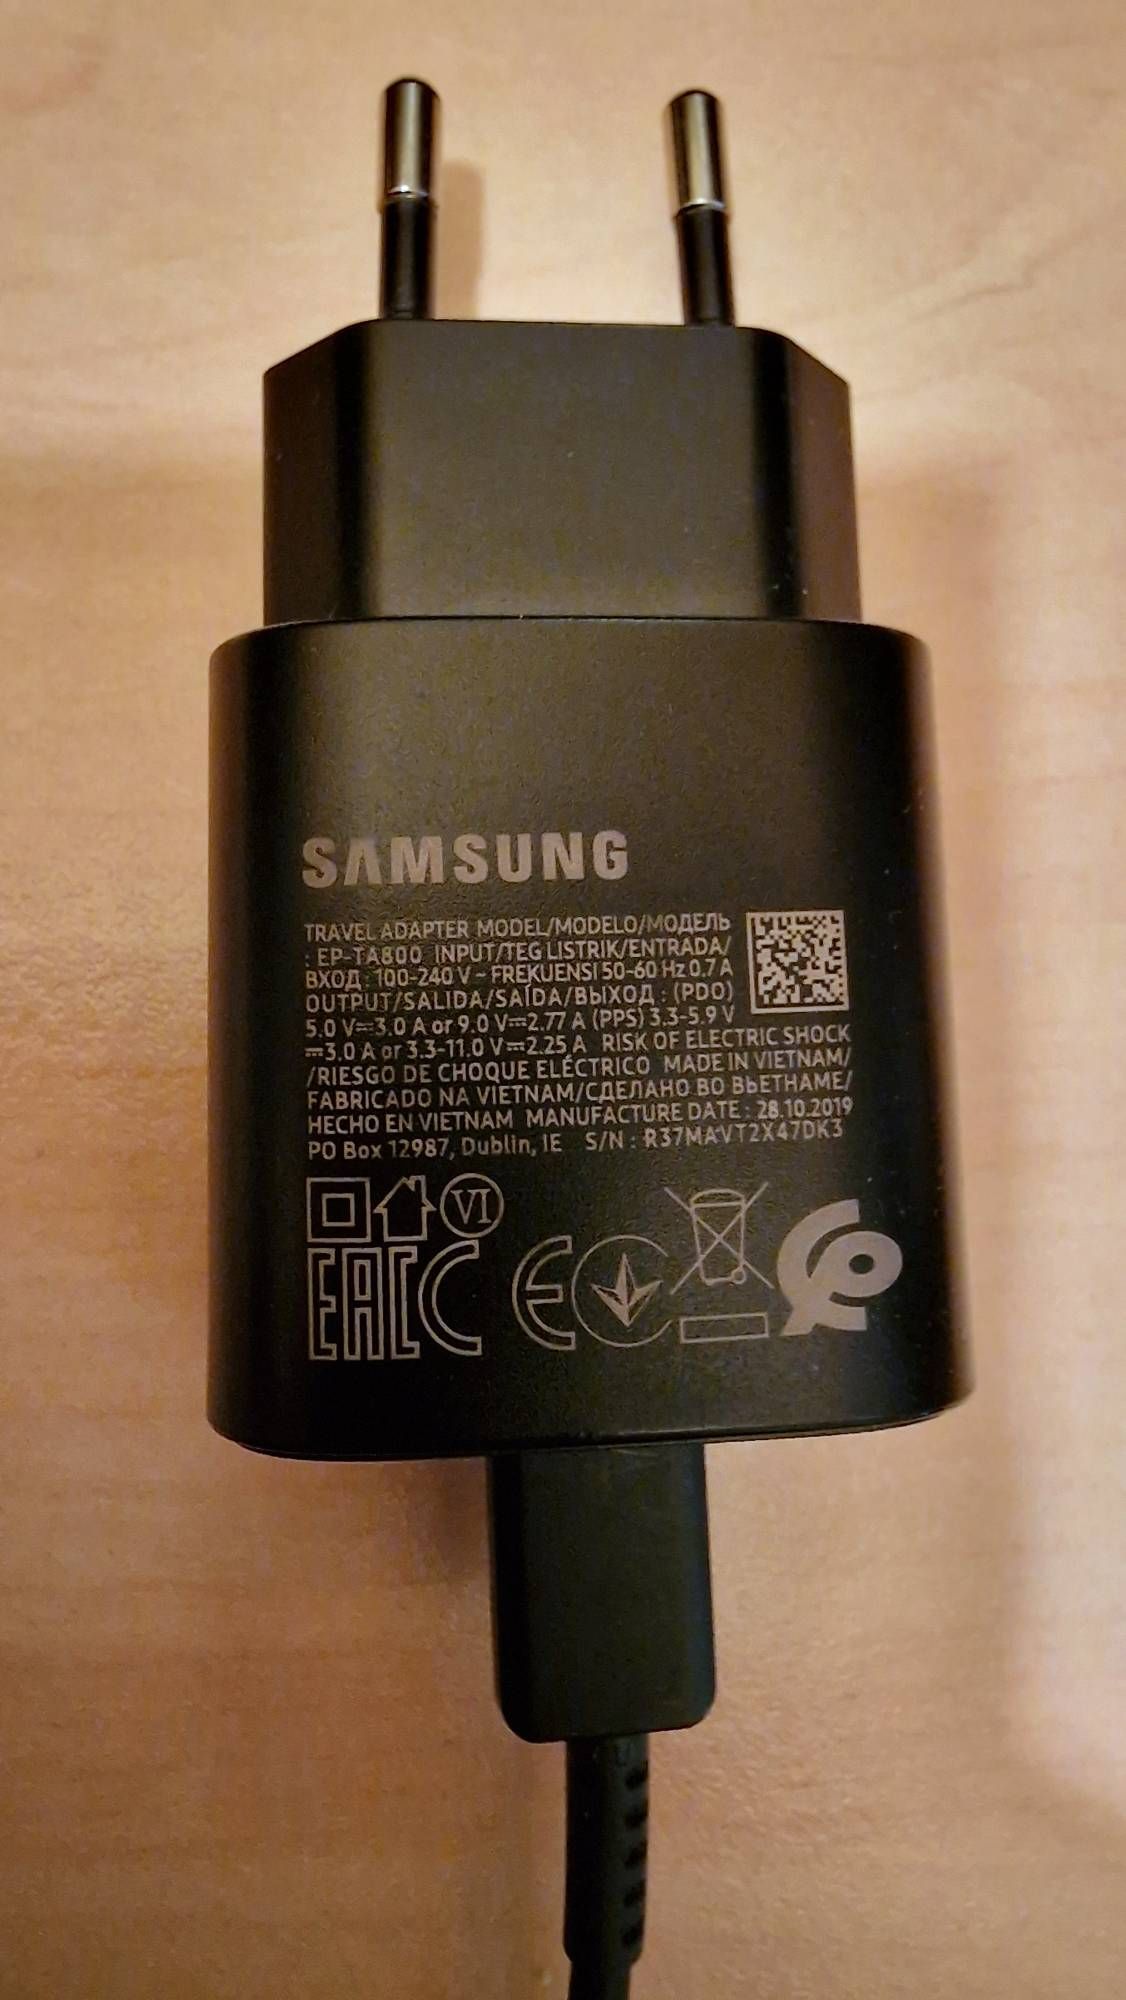 Chargeur original ou contrefaçon ? - Samsung Community